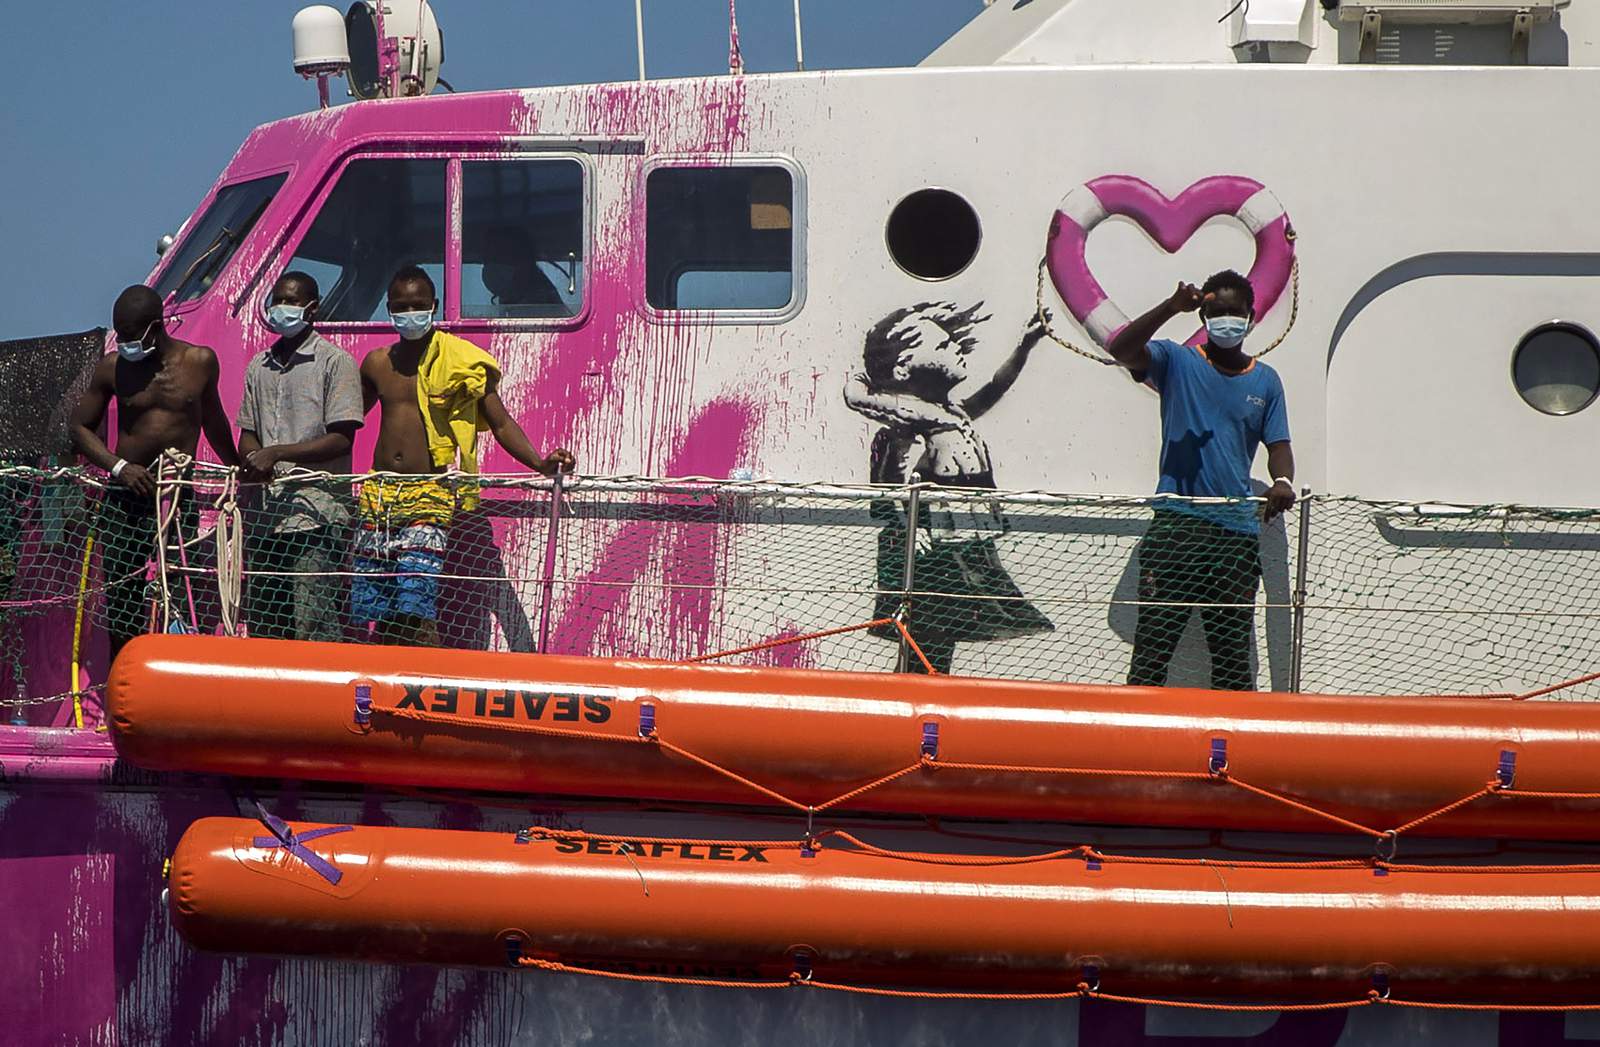 Artist Banksy on migrant crisis: ‘All Black Lives Matter’